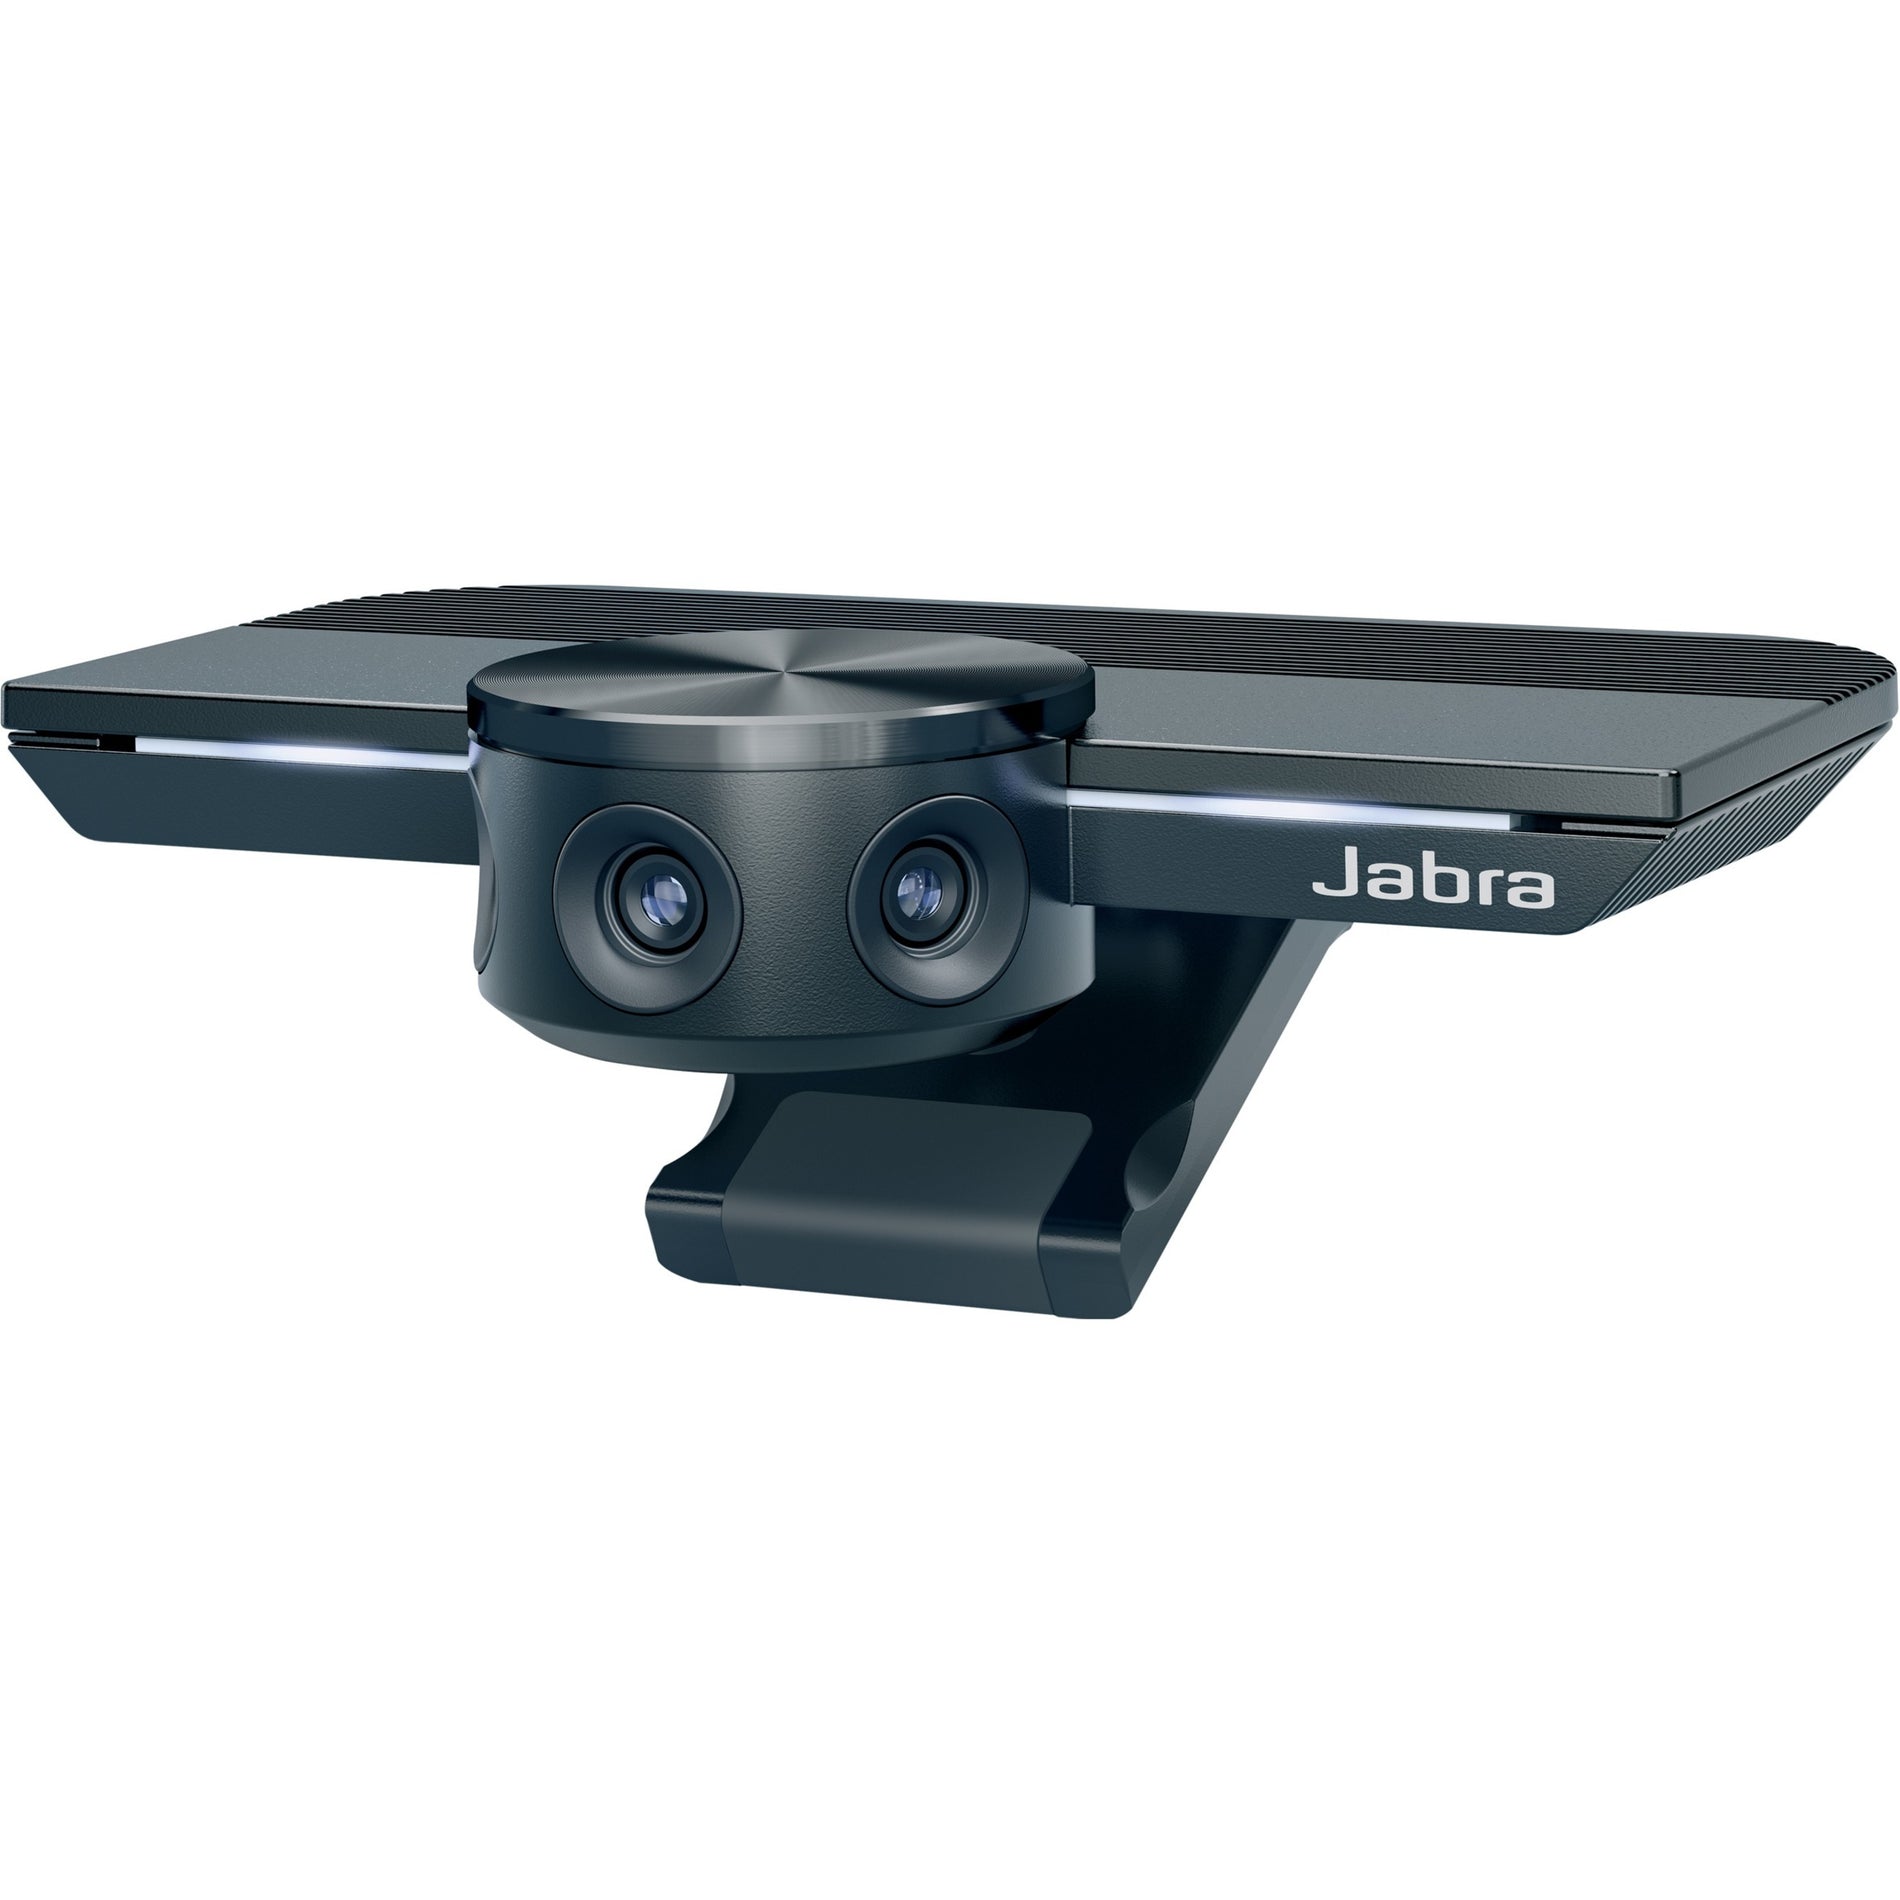 Jabra PanaCast Video Conferencing Camera - 13 Megapixel - USB (8100-119)